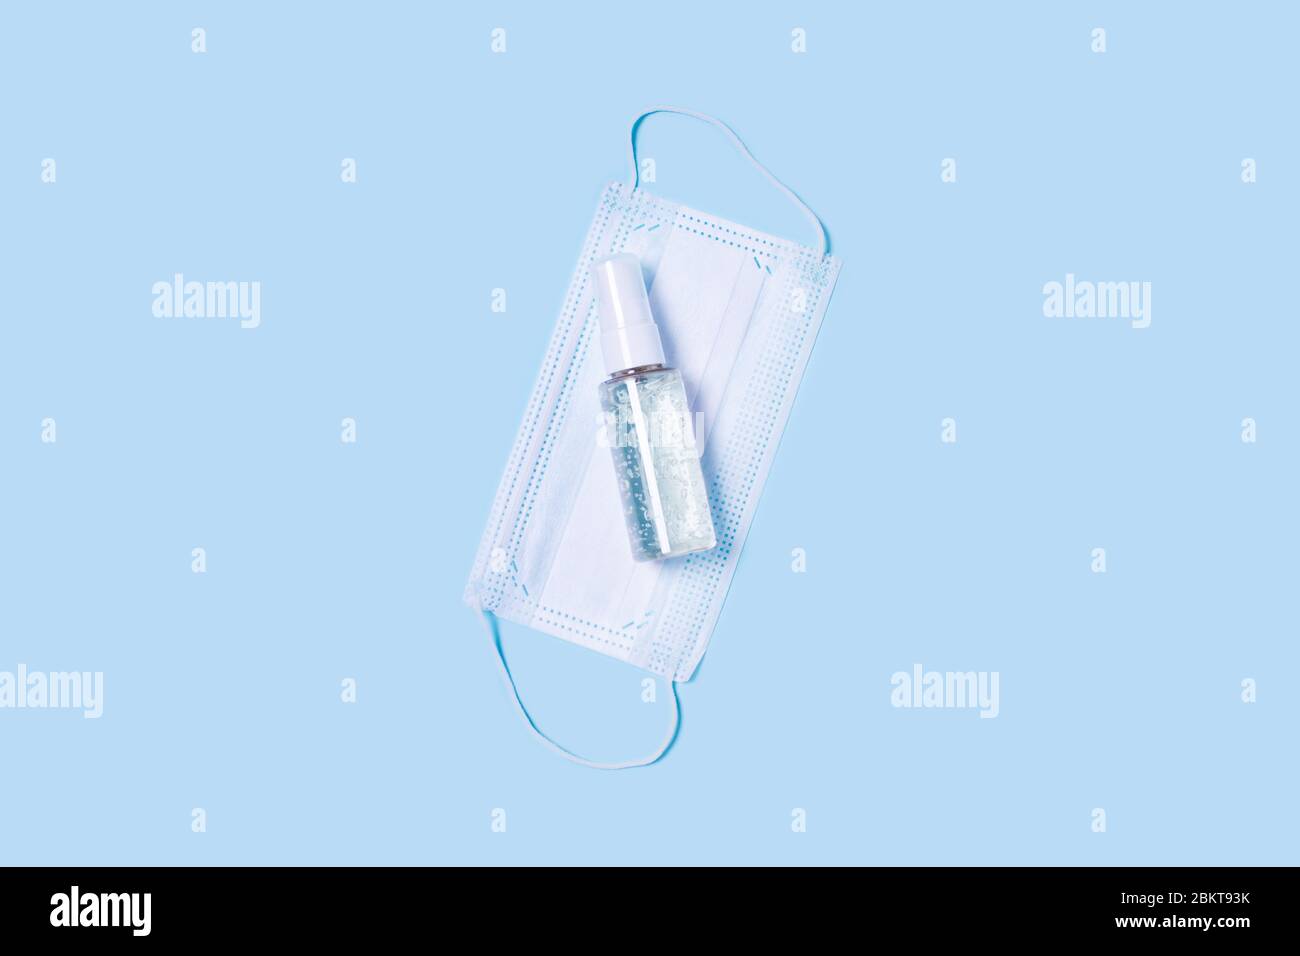 Coloque una mascarilla médica en el centro, una botella de jabón antiséptico o desinfectante para manos. Foto de stock